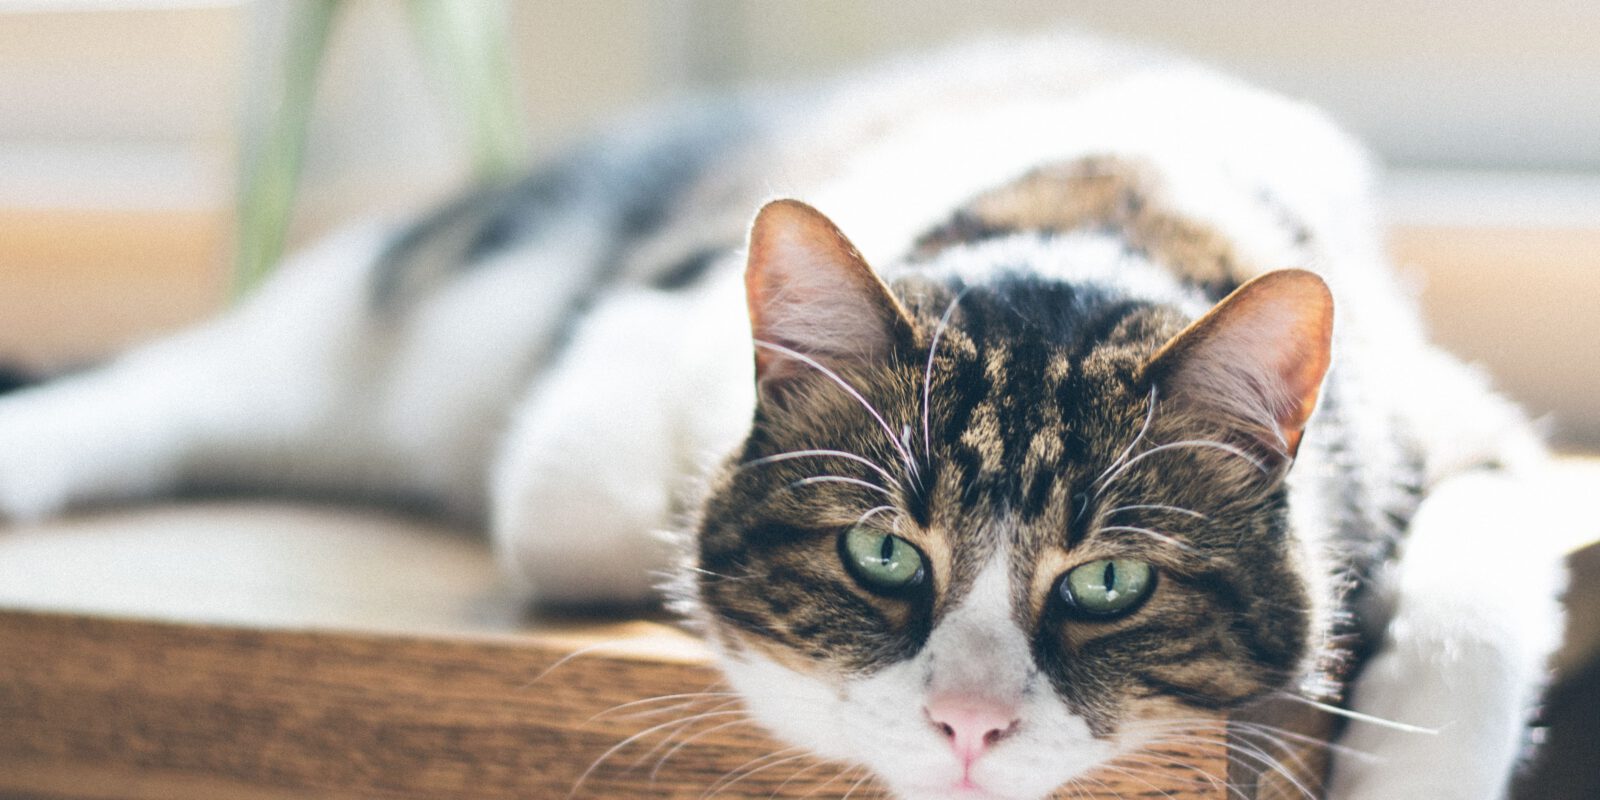 Wenn die Katze scheinbar grundlos abnimmt, kraftlos und müde ist, kann das ein erstes Warn-signal für eine Nierenschwäche sein und der Katzenhalter sollte handeln. Foto: Nathan Fertig